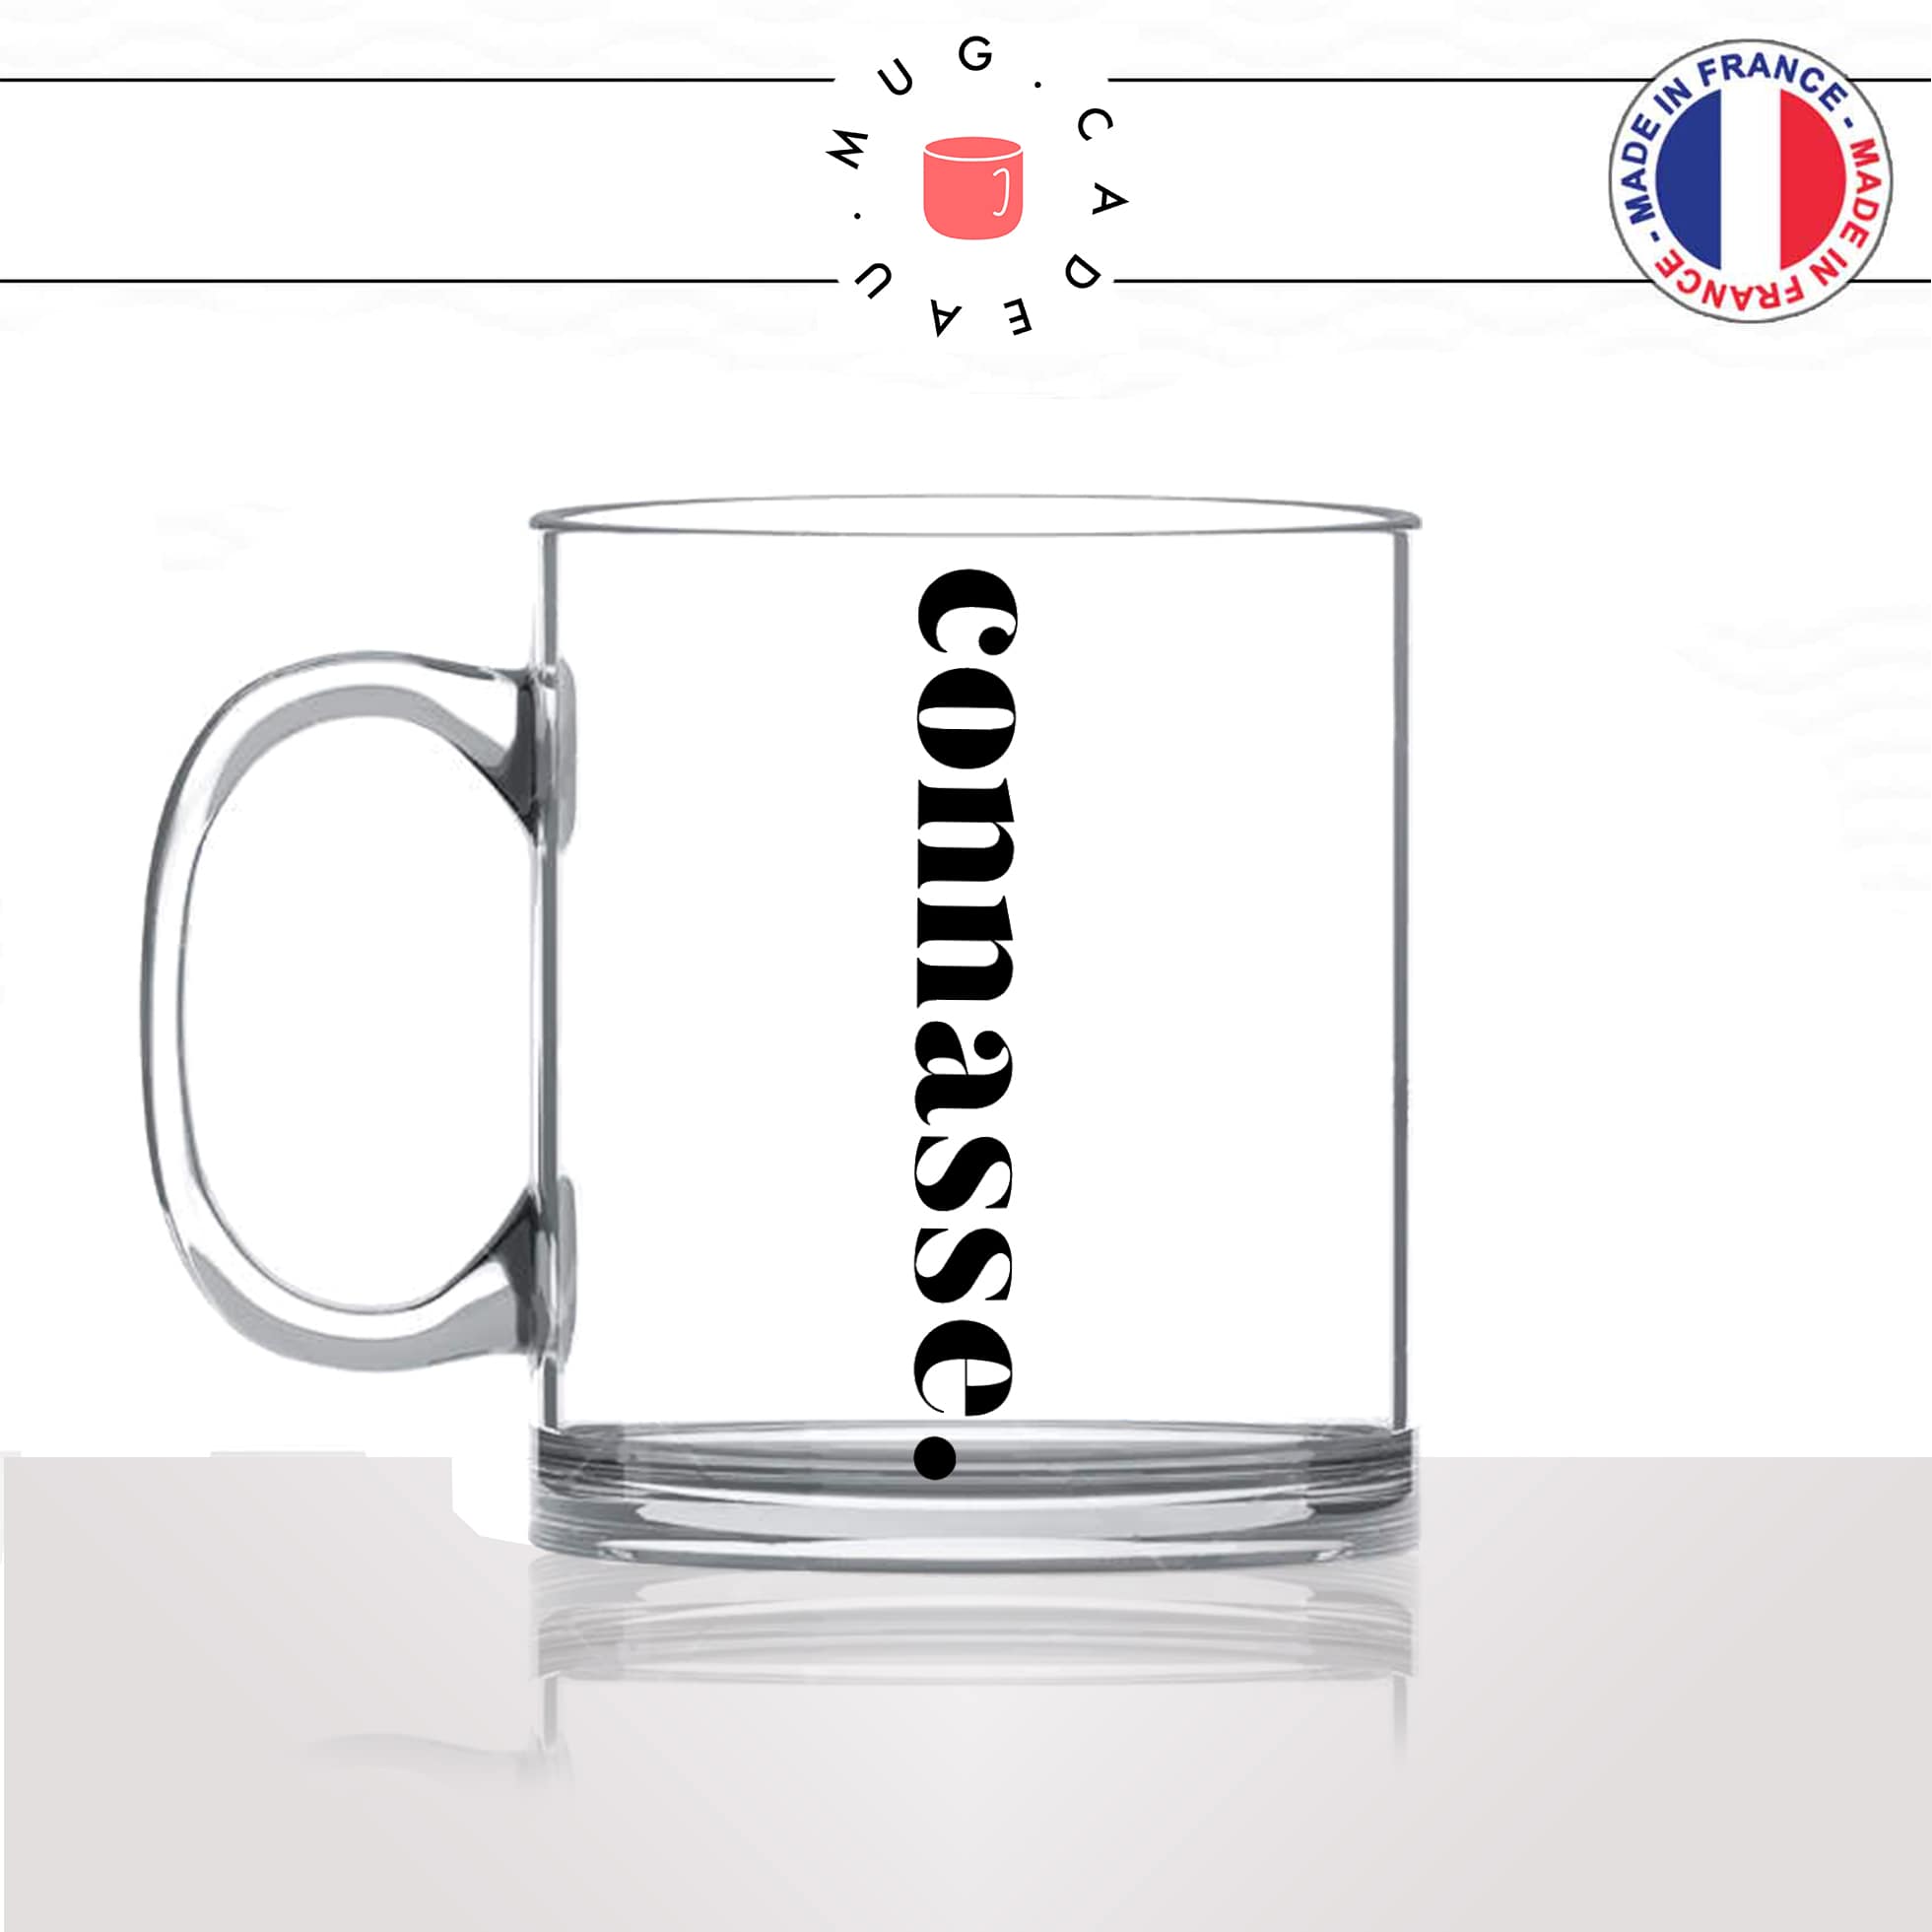 mug-tasse-en-verre-transparent-glass-connasse-calligraphie-lettrine-mot-femme-conne-couple-décoration-amie-idée-cadeau-original-personnalisé-café-thé-min